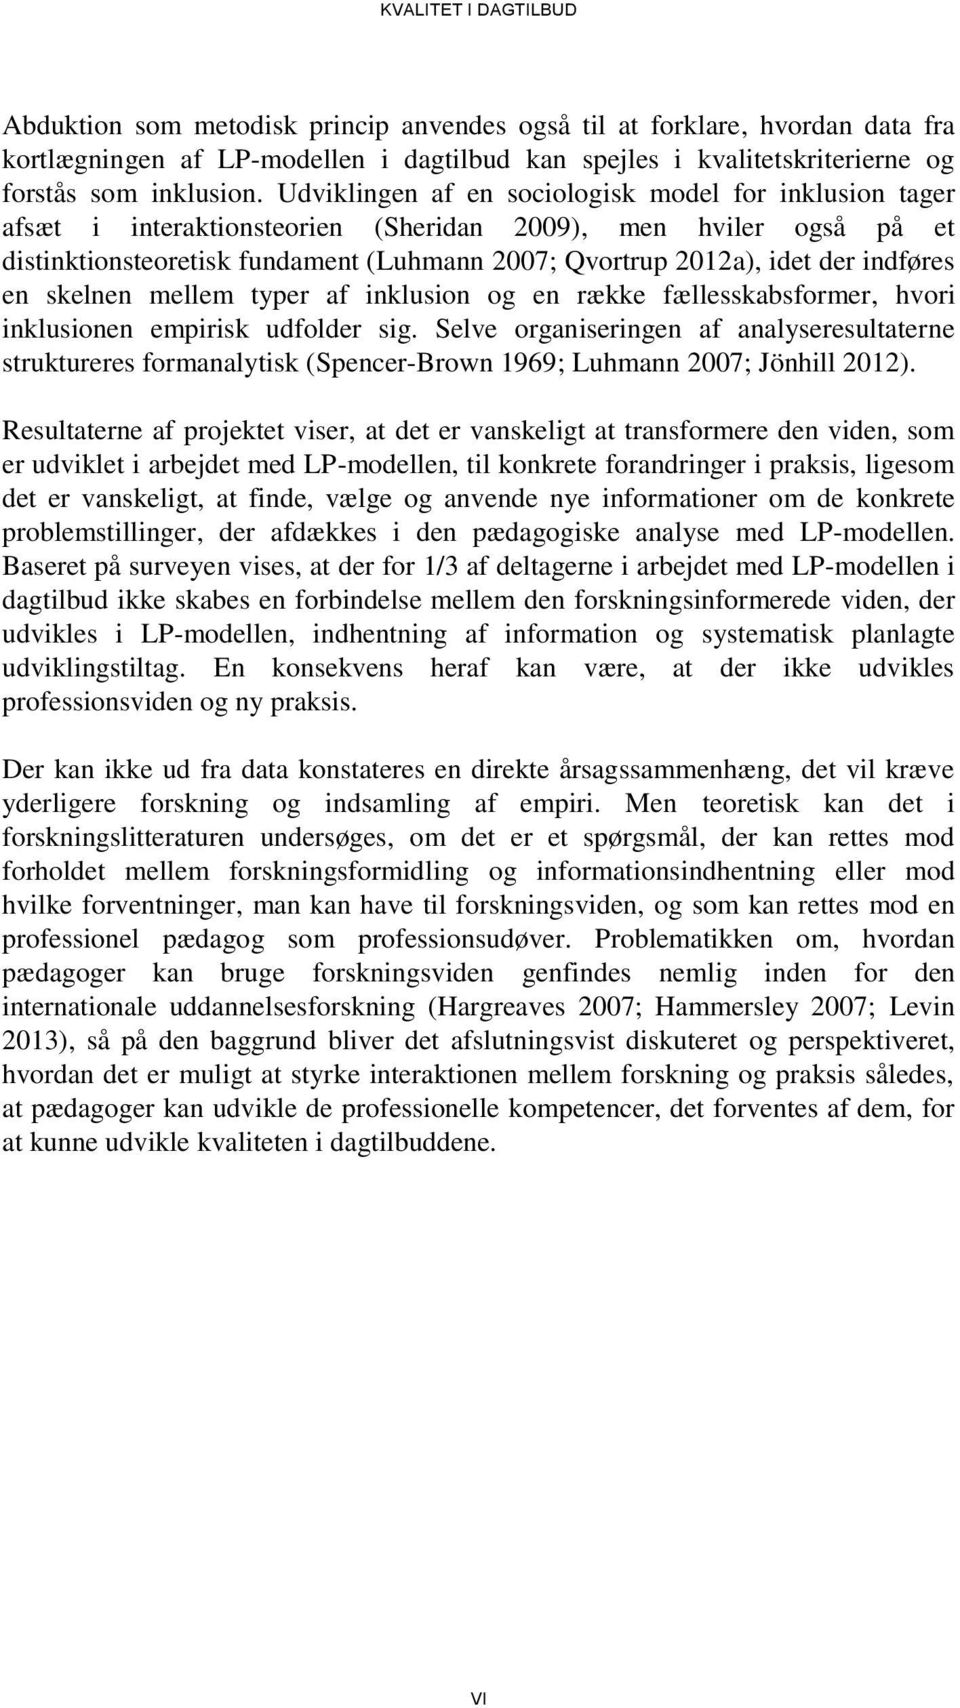 Udviklingen af en sociologisk model for inklusion tager afsæt i interaktionsteorien (Sheridan 2009), men hviler også på et distinktionsteoretisk fundament (Luhmann 2007; Qvortrup 2012a), idet der